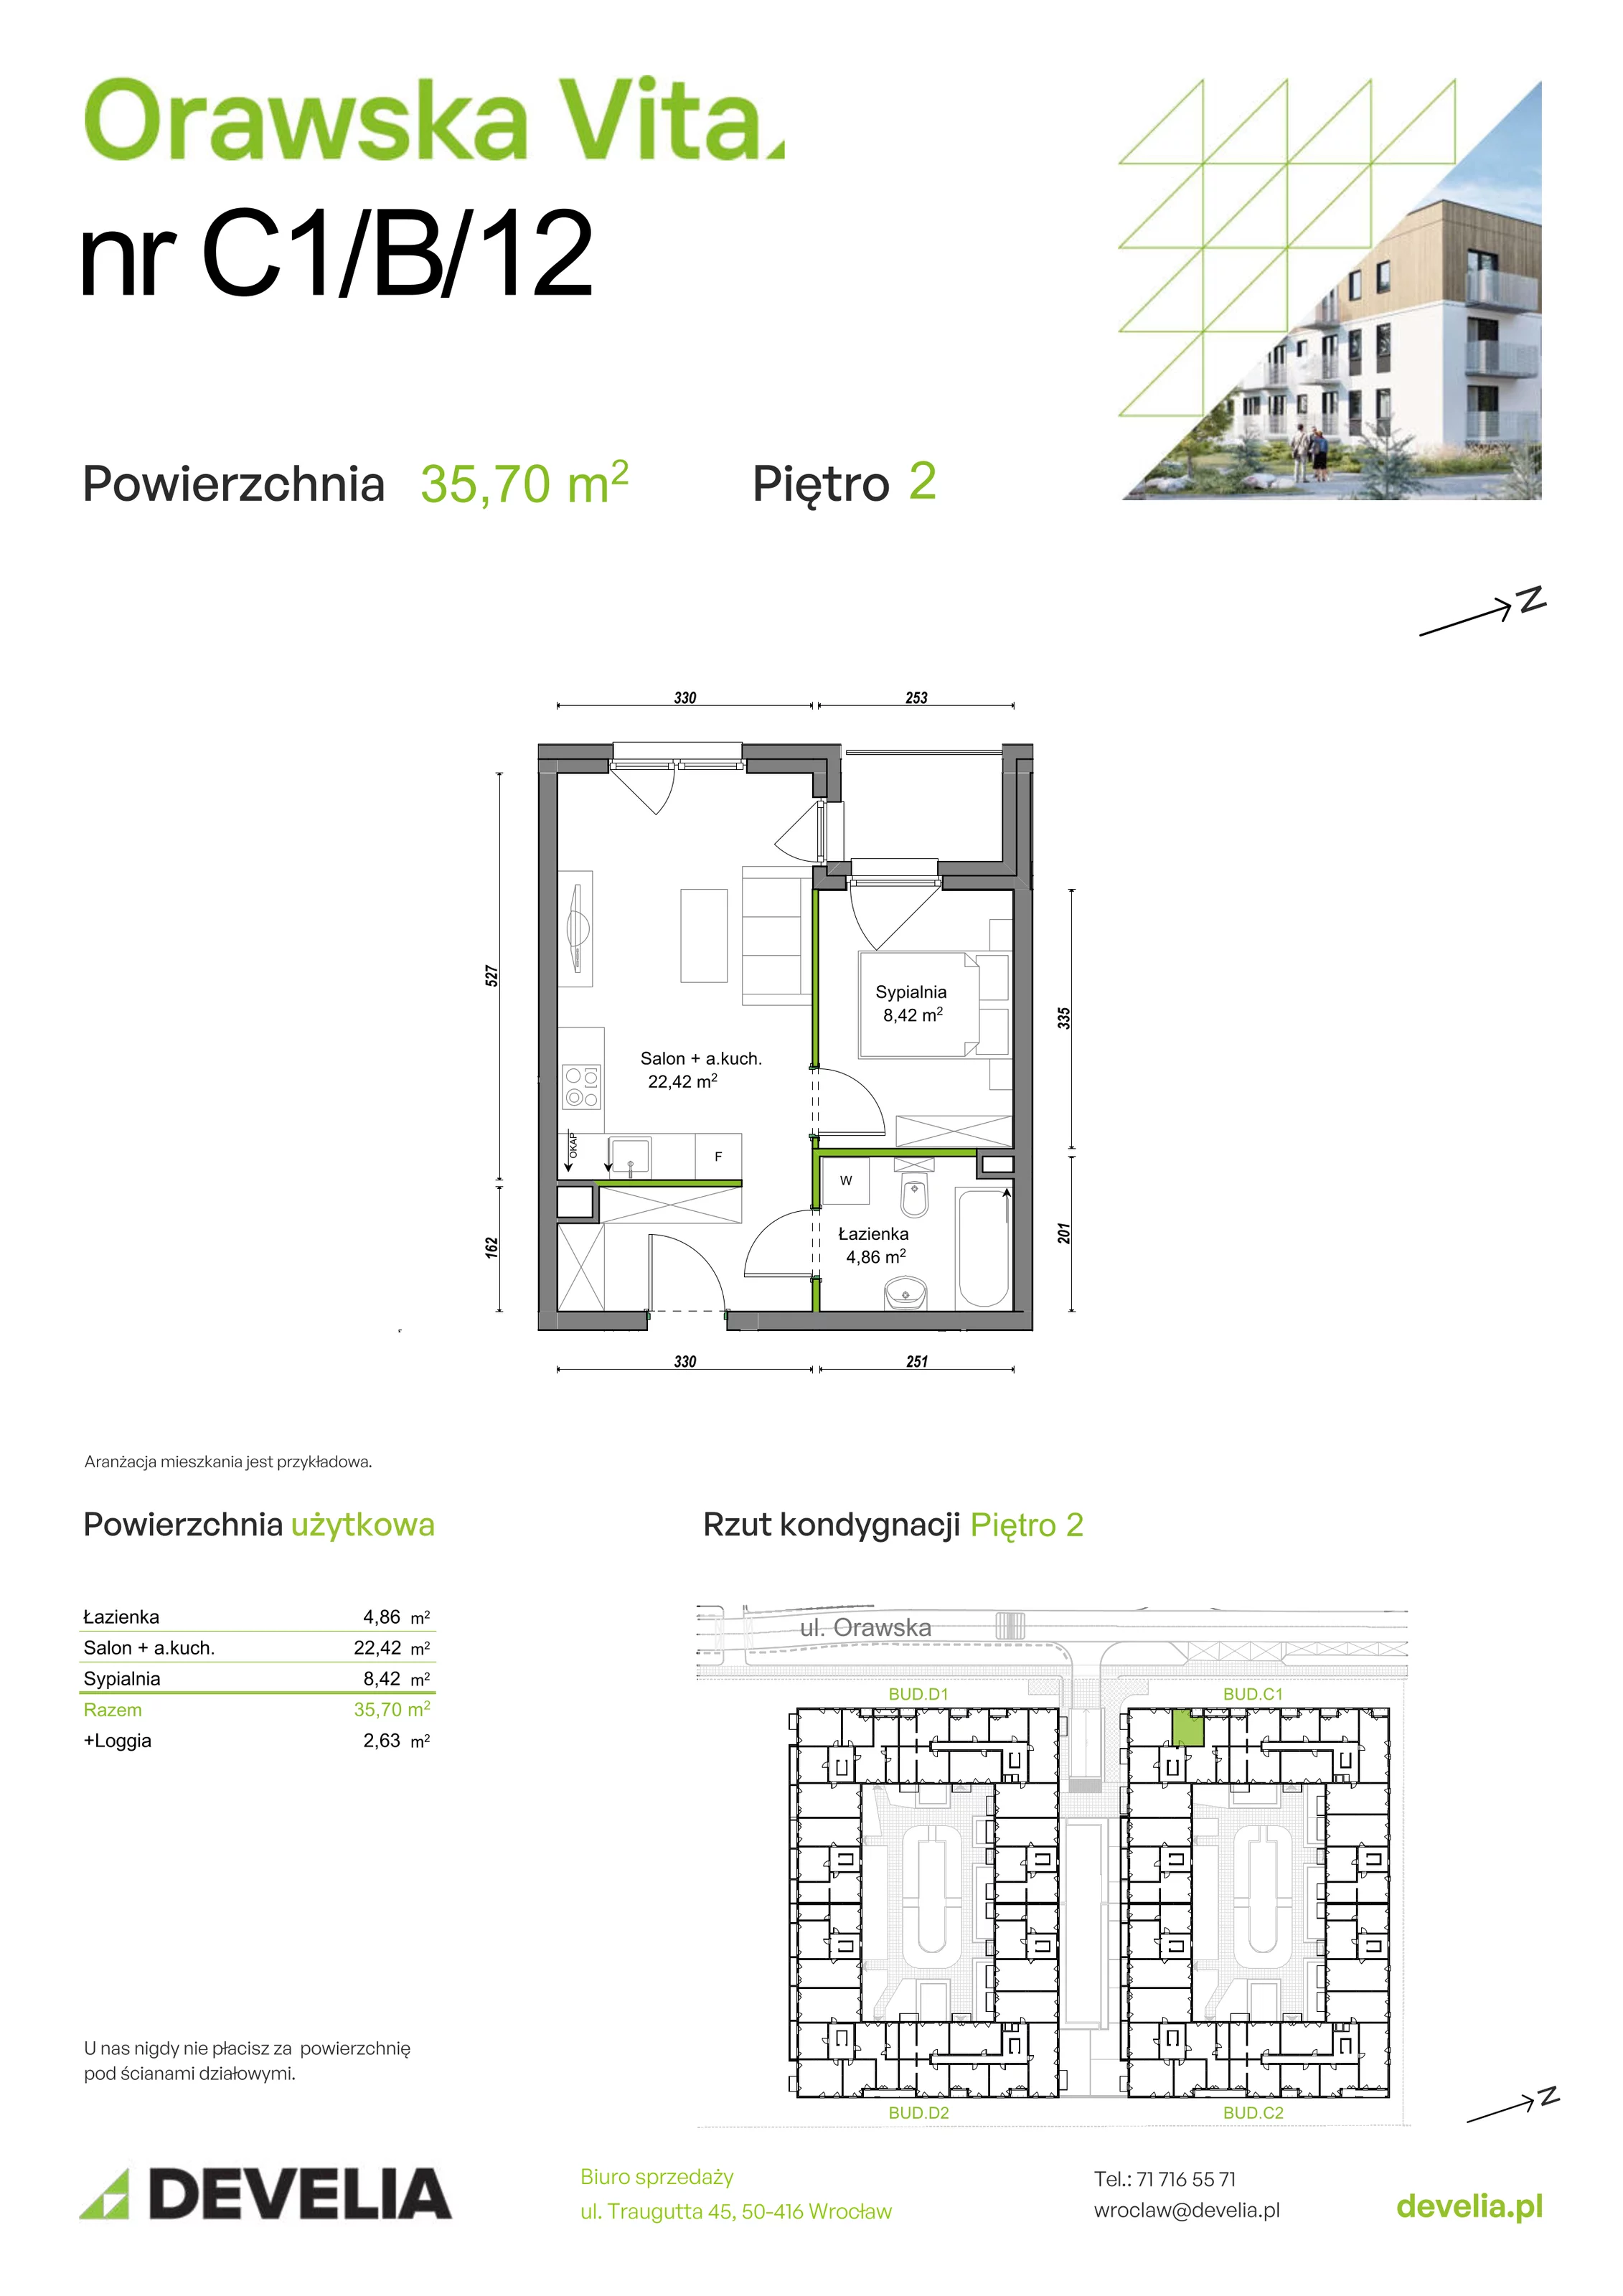 Mieszkanie 35,70 m², piętro 2, oferta nr C1/B/12, Orawska Vita, Wrocław, Ołtaszyn, Krzyki, ul. Orawska 73